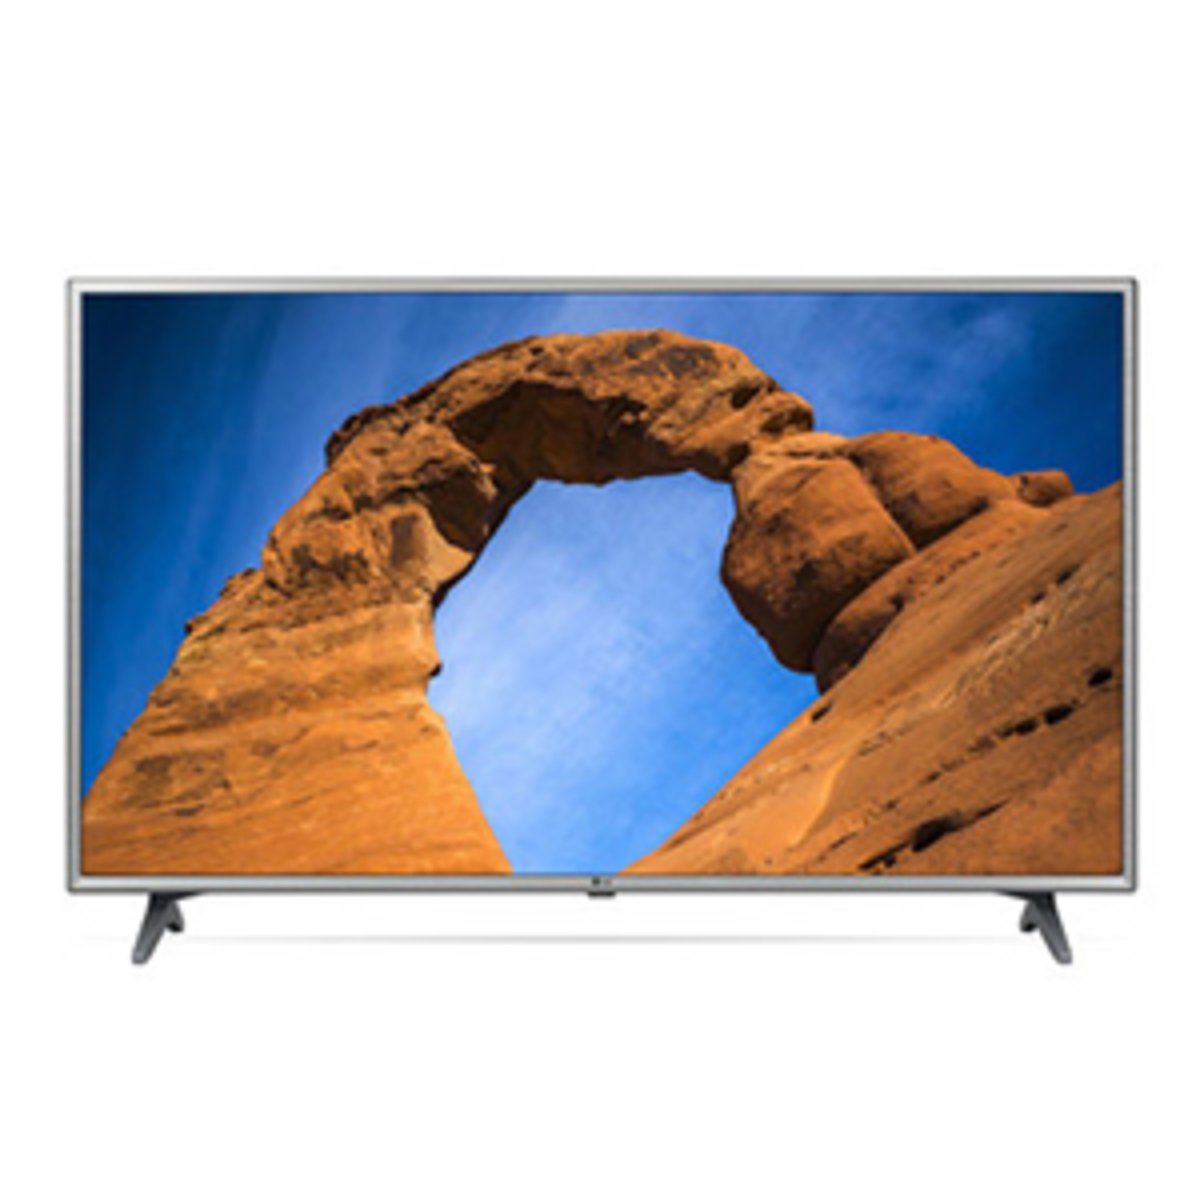 LG Full HD Smart LED TV 49LK6100PVA 49inch